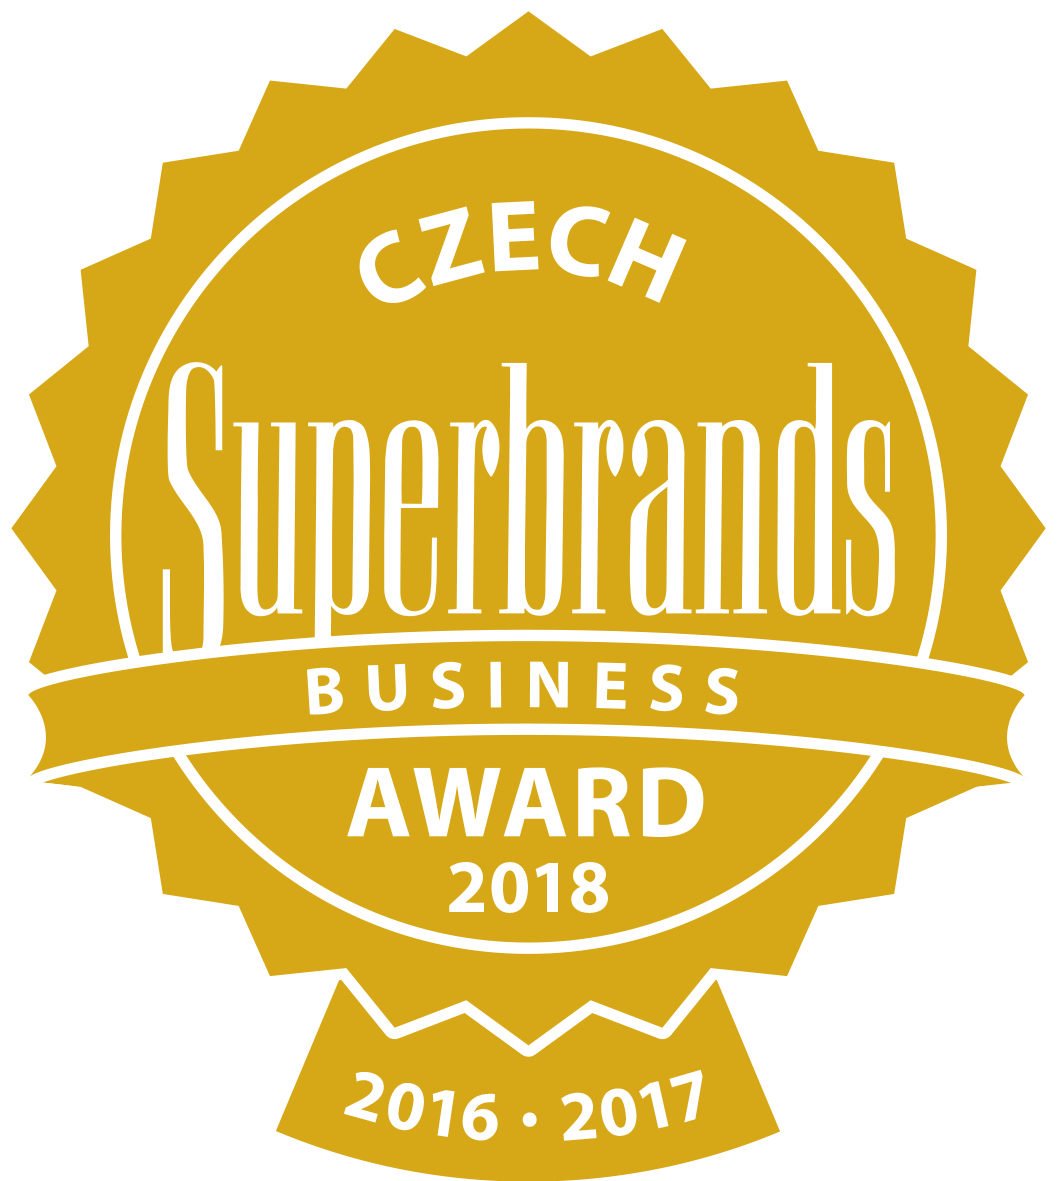 2016-2017 - Czech Business Superbrands